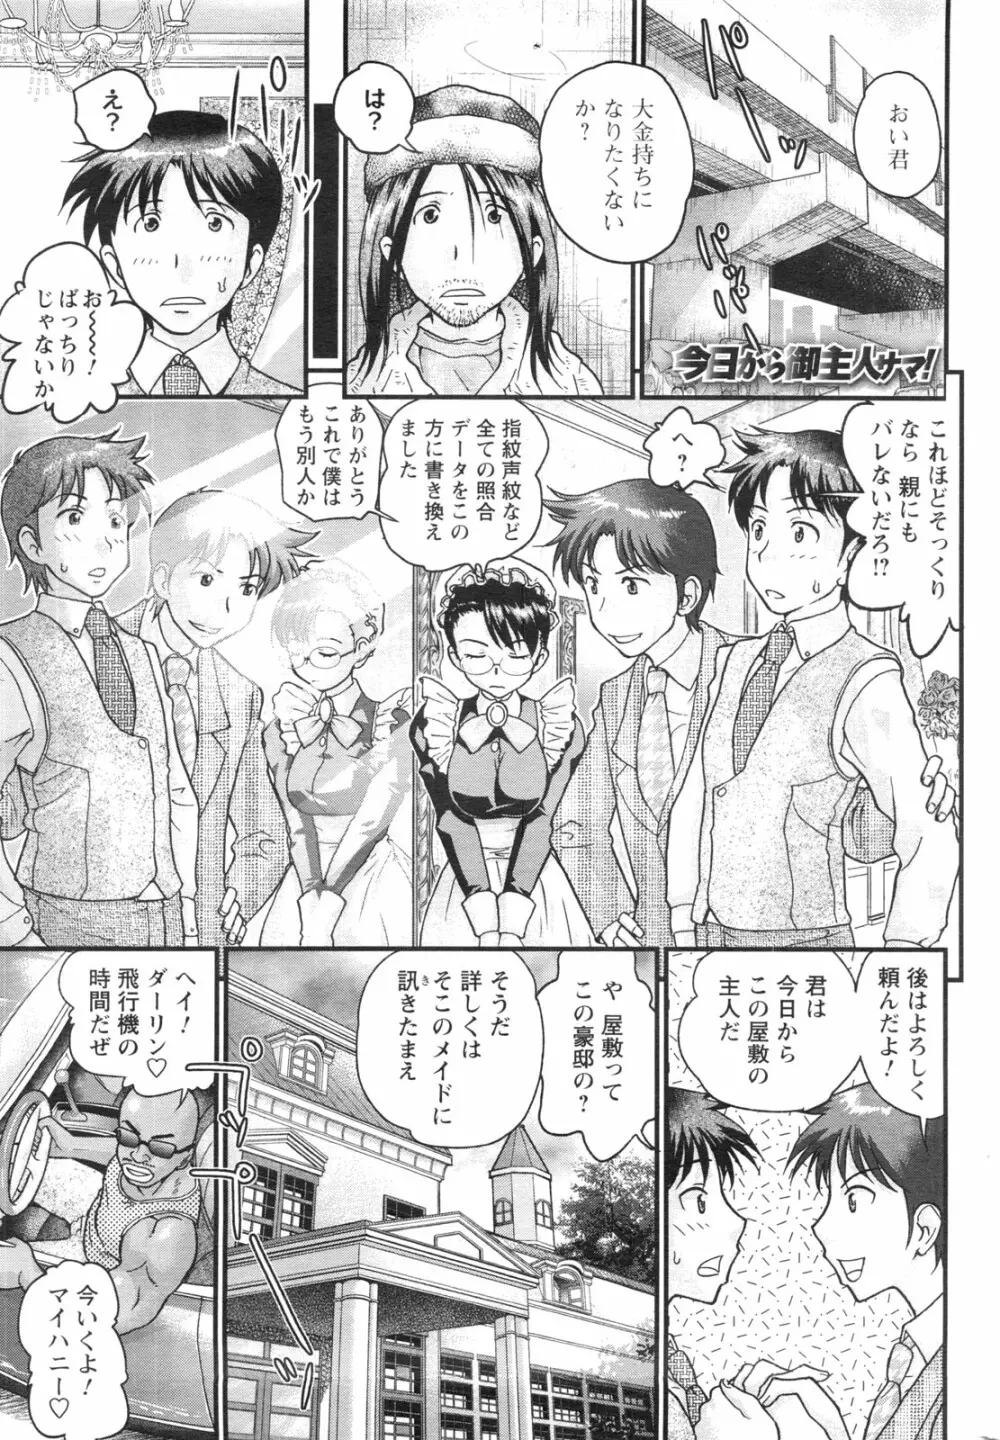 メンズヤングスペシャルIKAZUCHI雷 Vol.13 2010年3月号増刊 212ページ